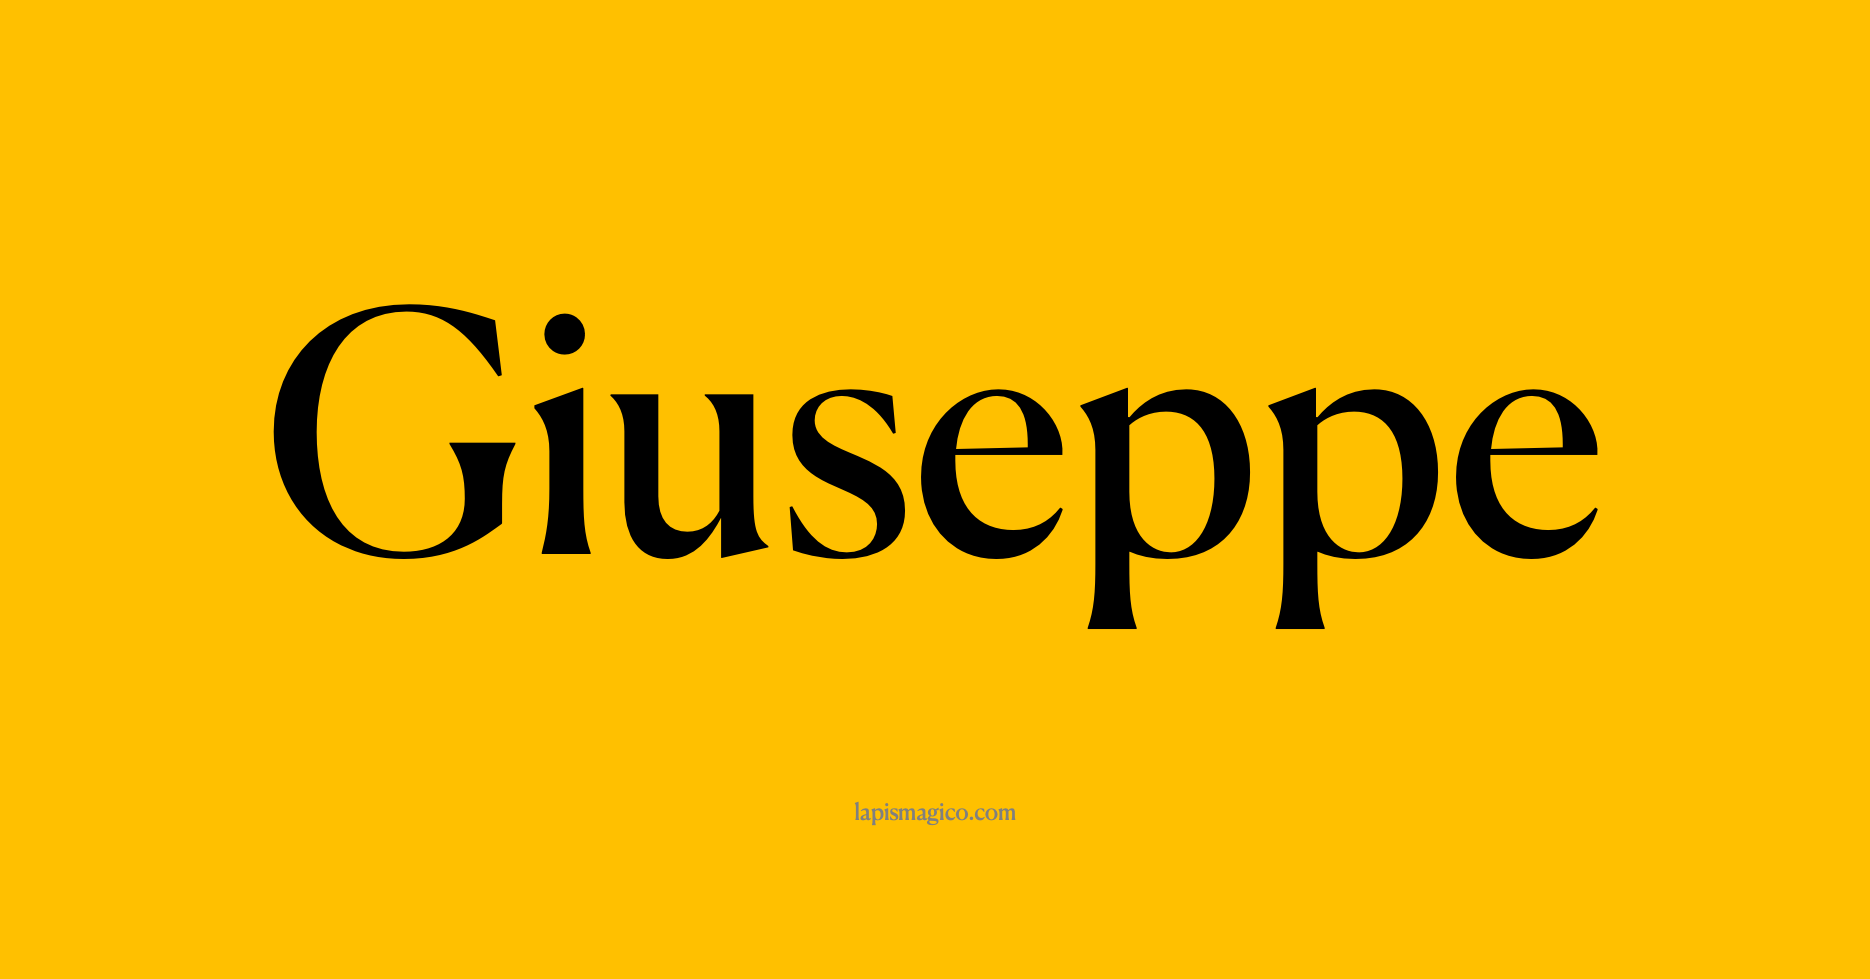 Nome Giuseppe